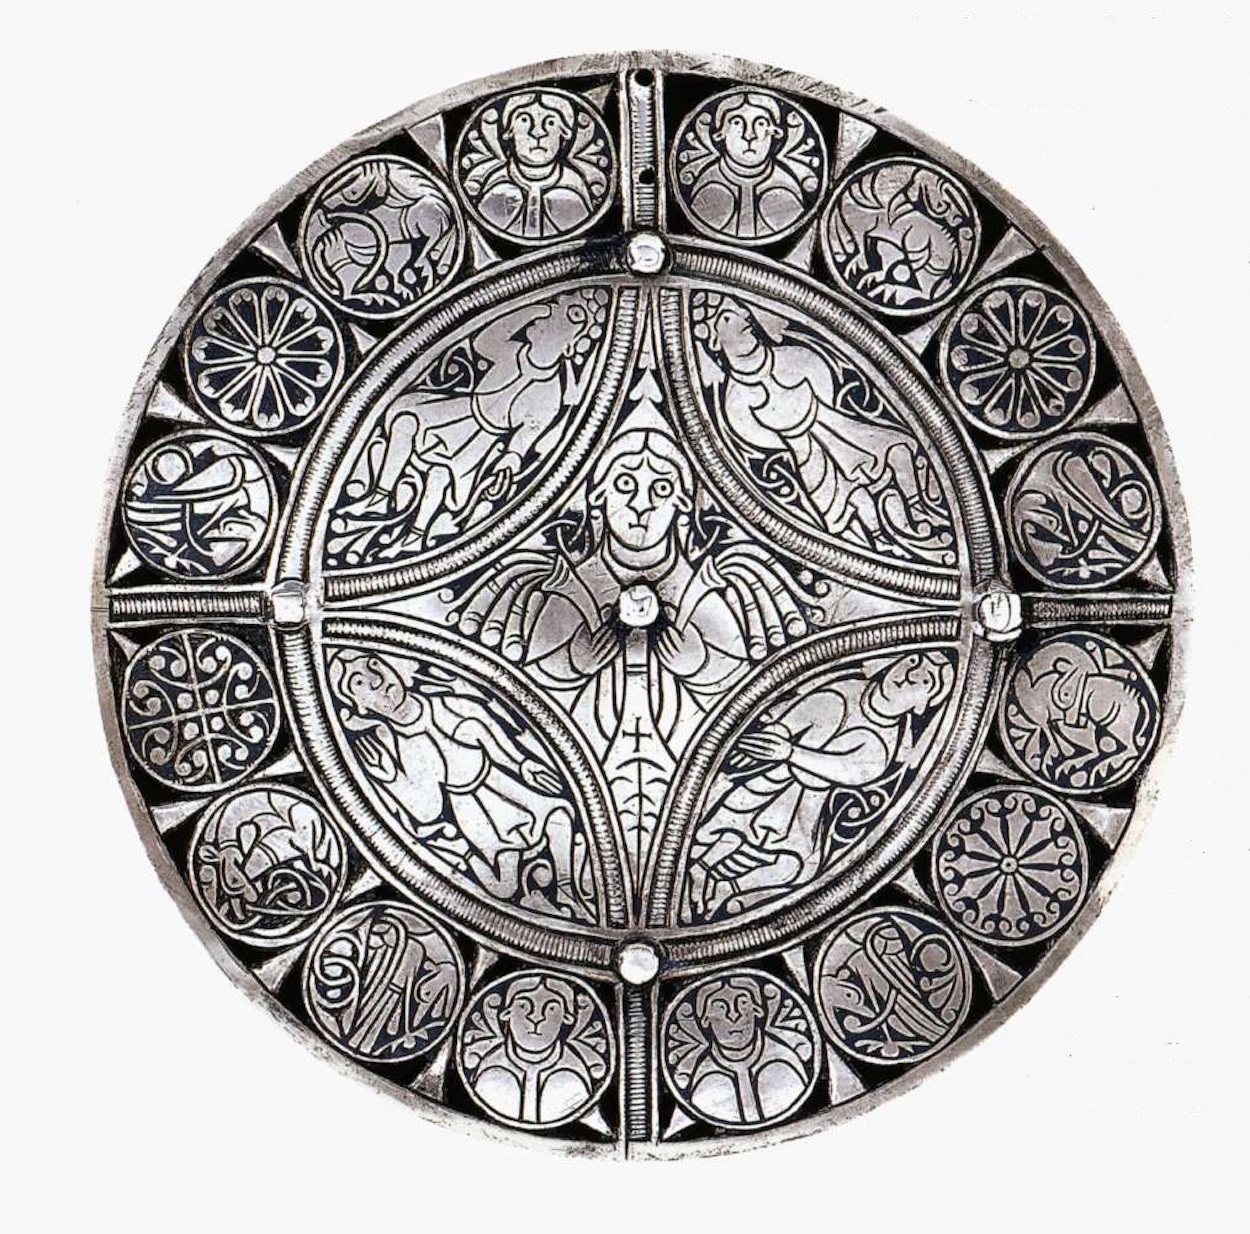 Брошка "Фуллера" by Unknown Artist - Пізнє 9 століття - 114 мм в діаметрі 